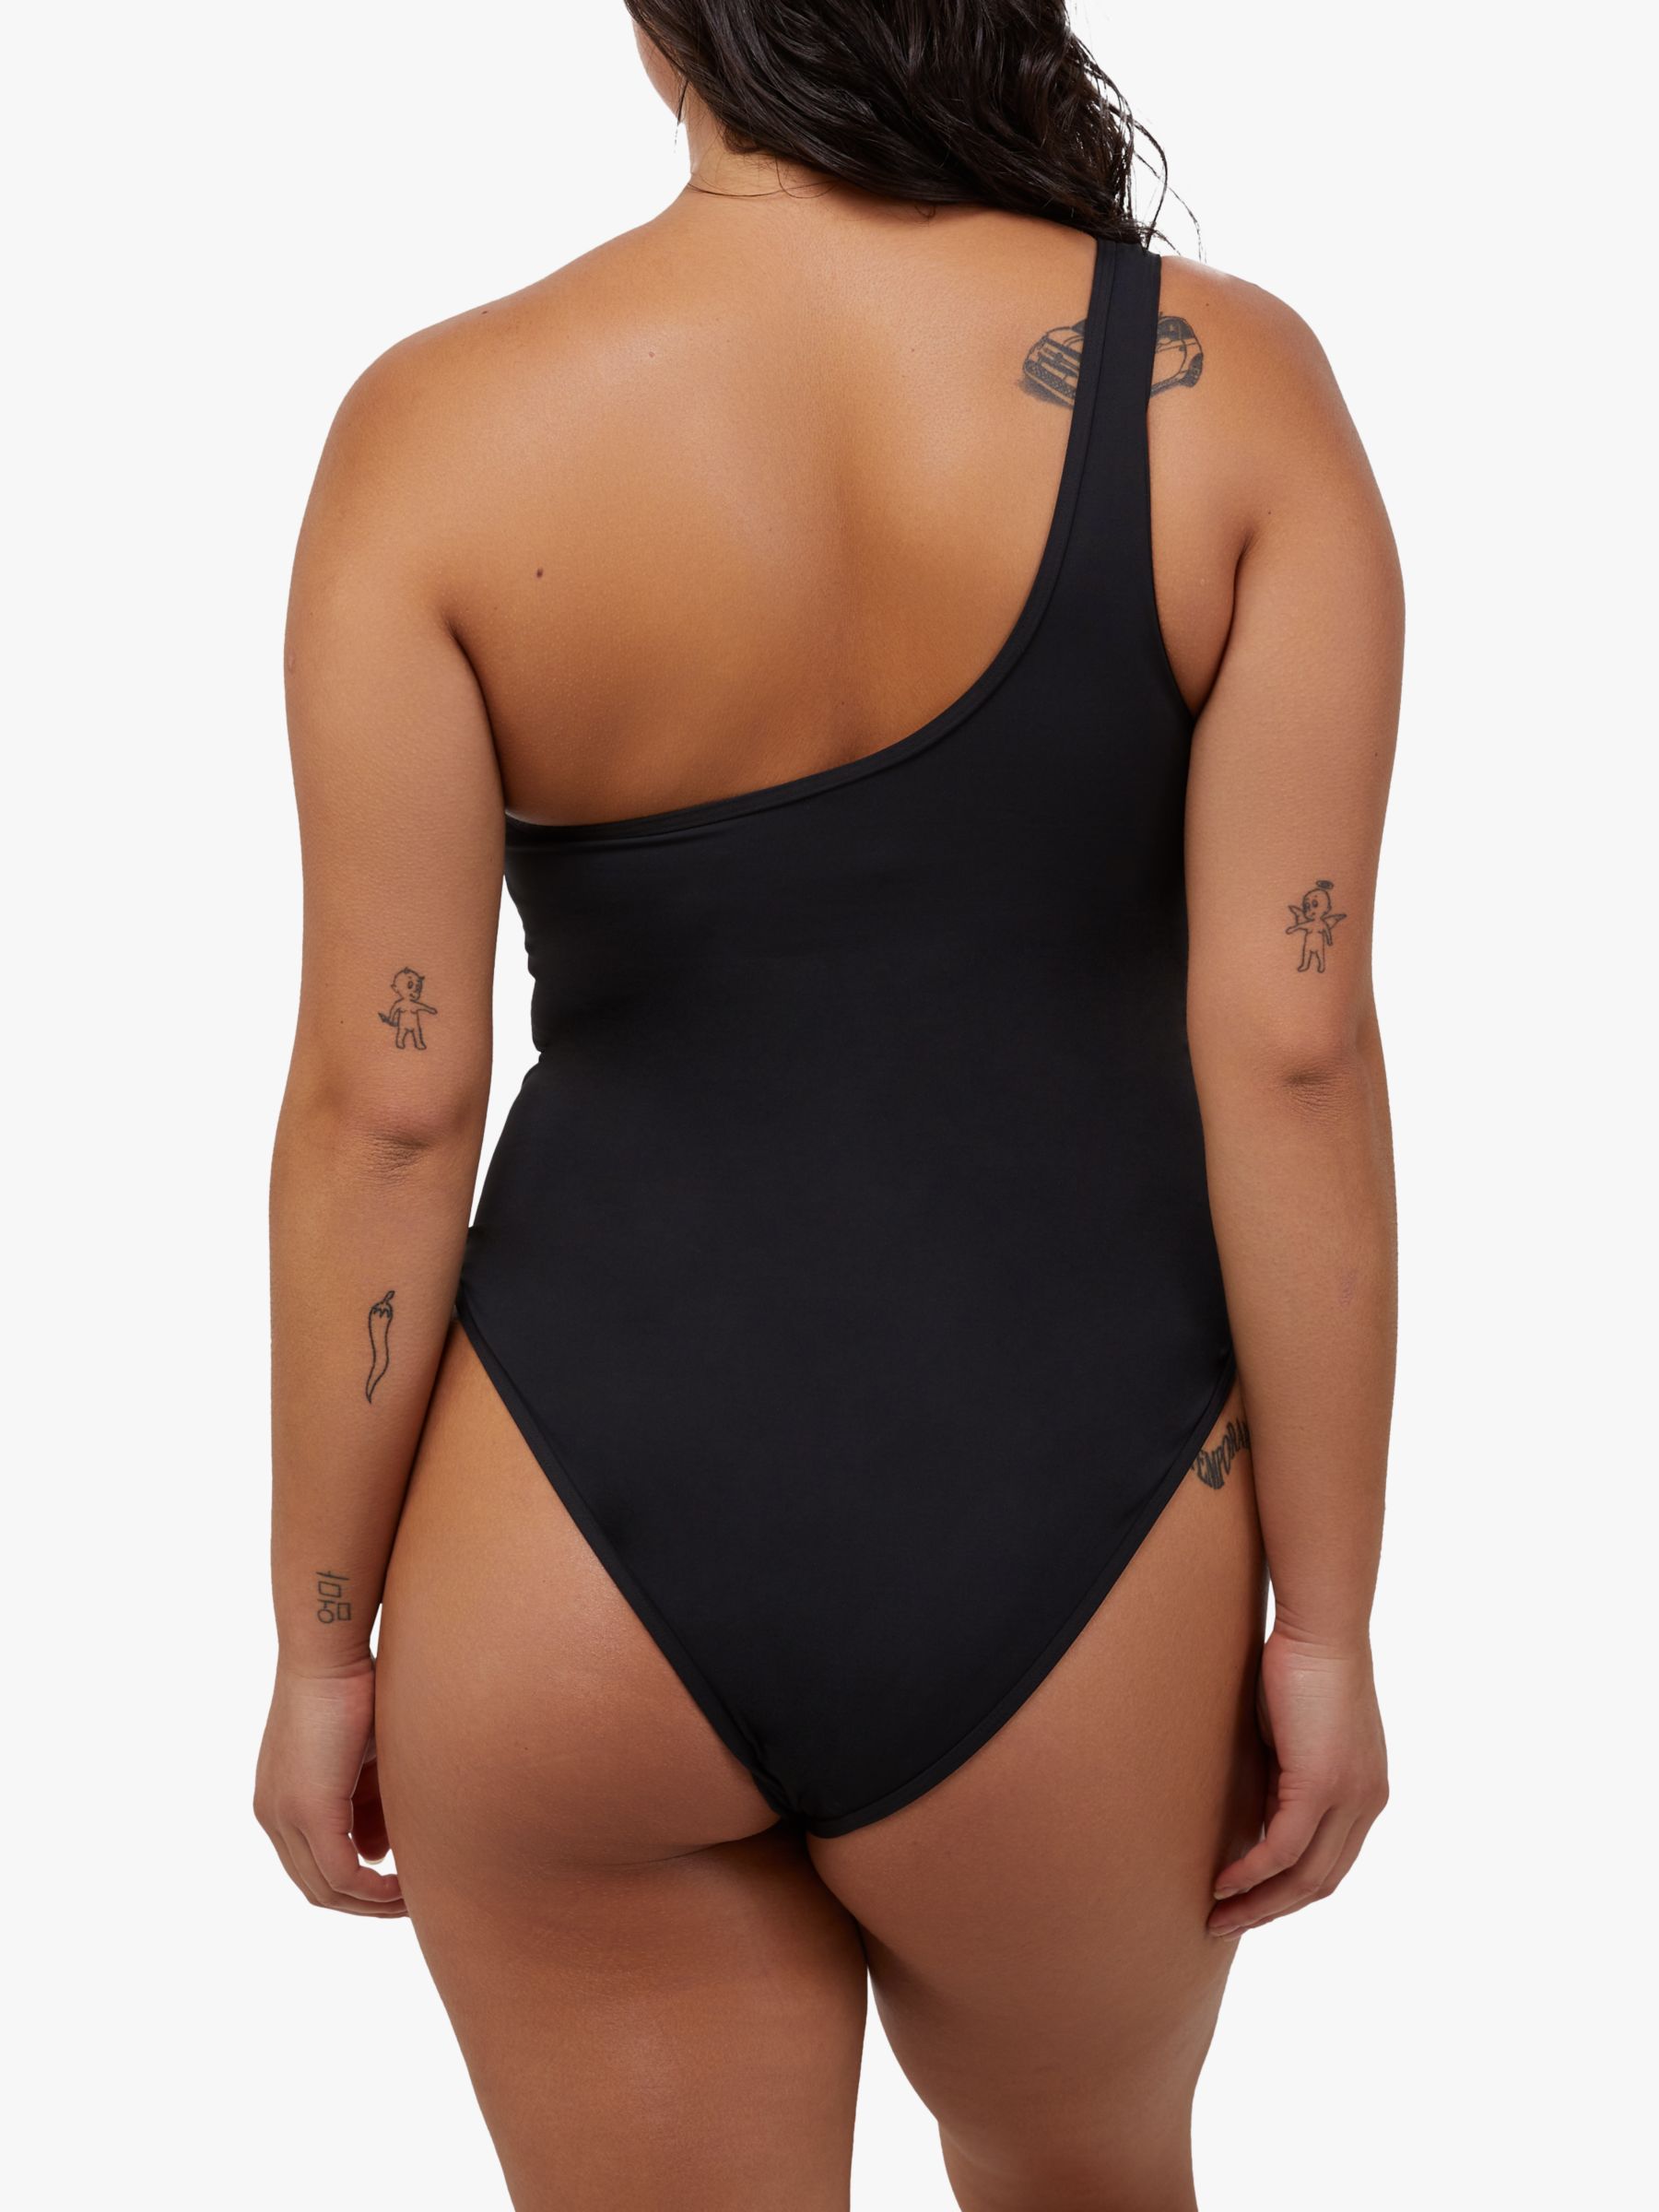 Wolf & Whistle Eloise Fuller Bust Asymmetric Mesh Panel Swimsuit, Black, 30D/DD